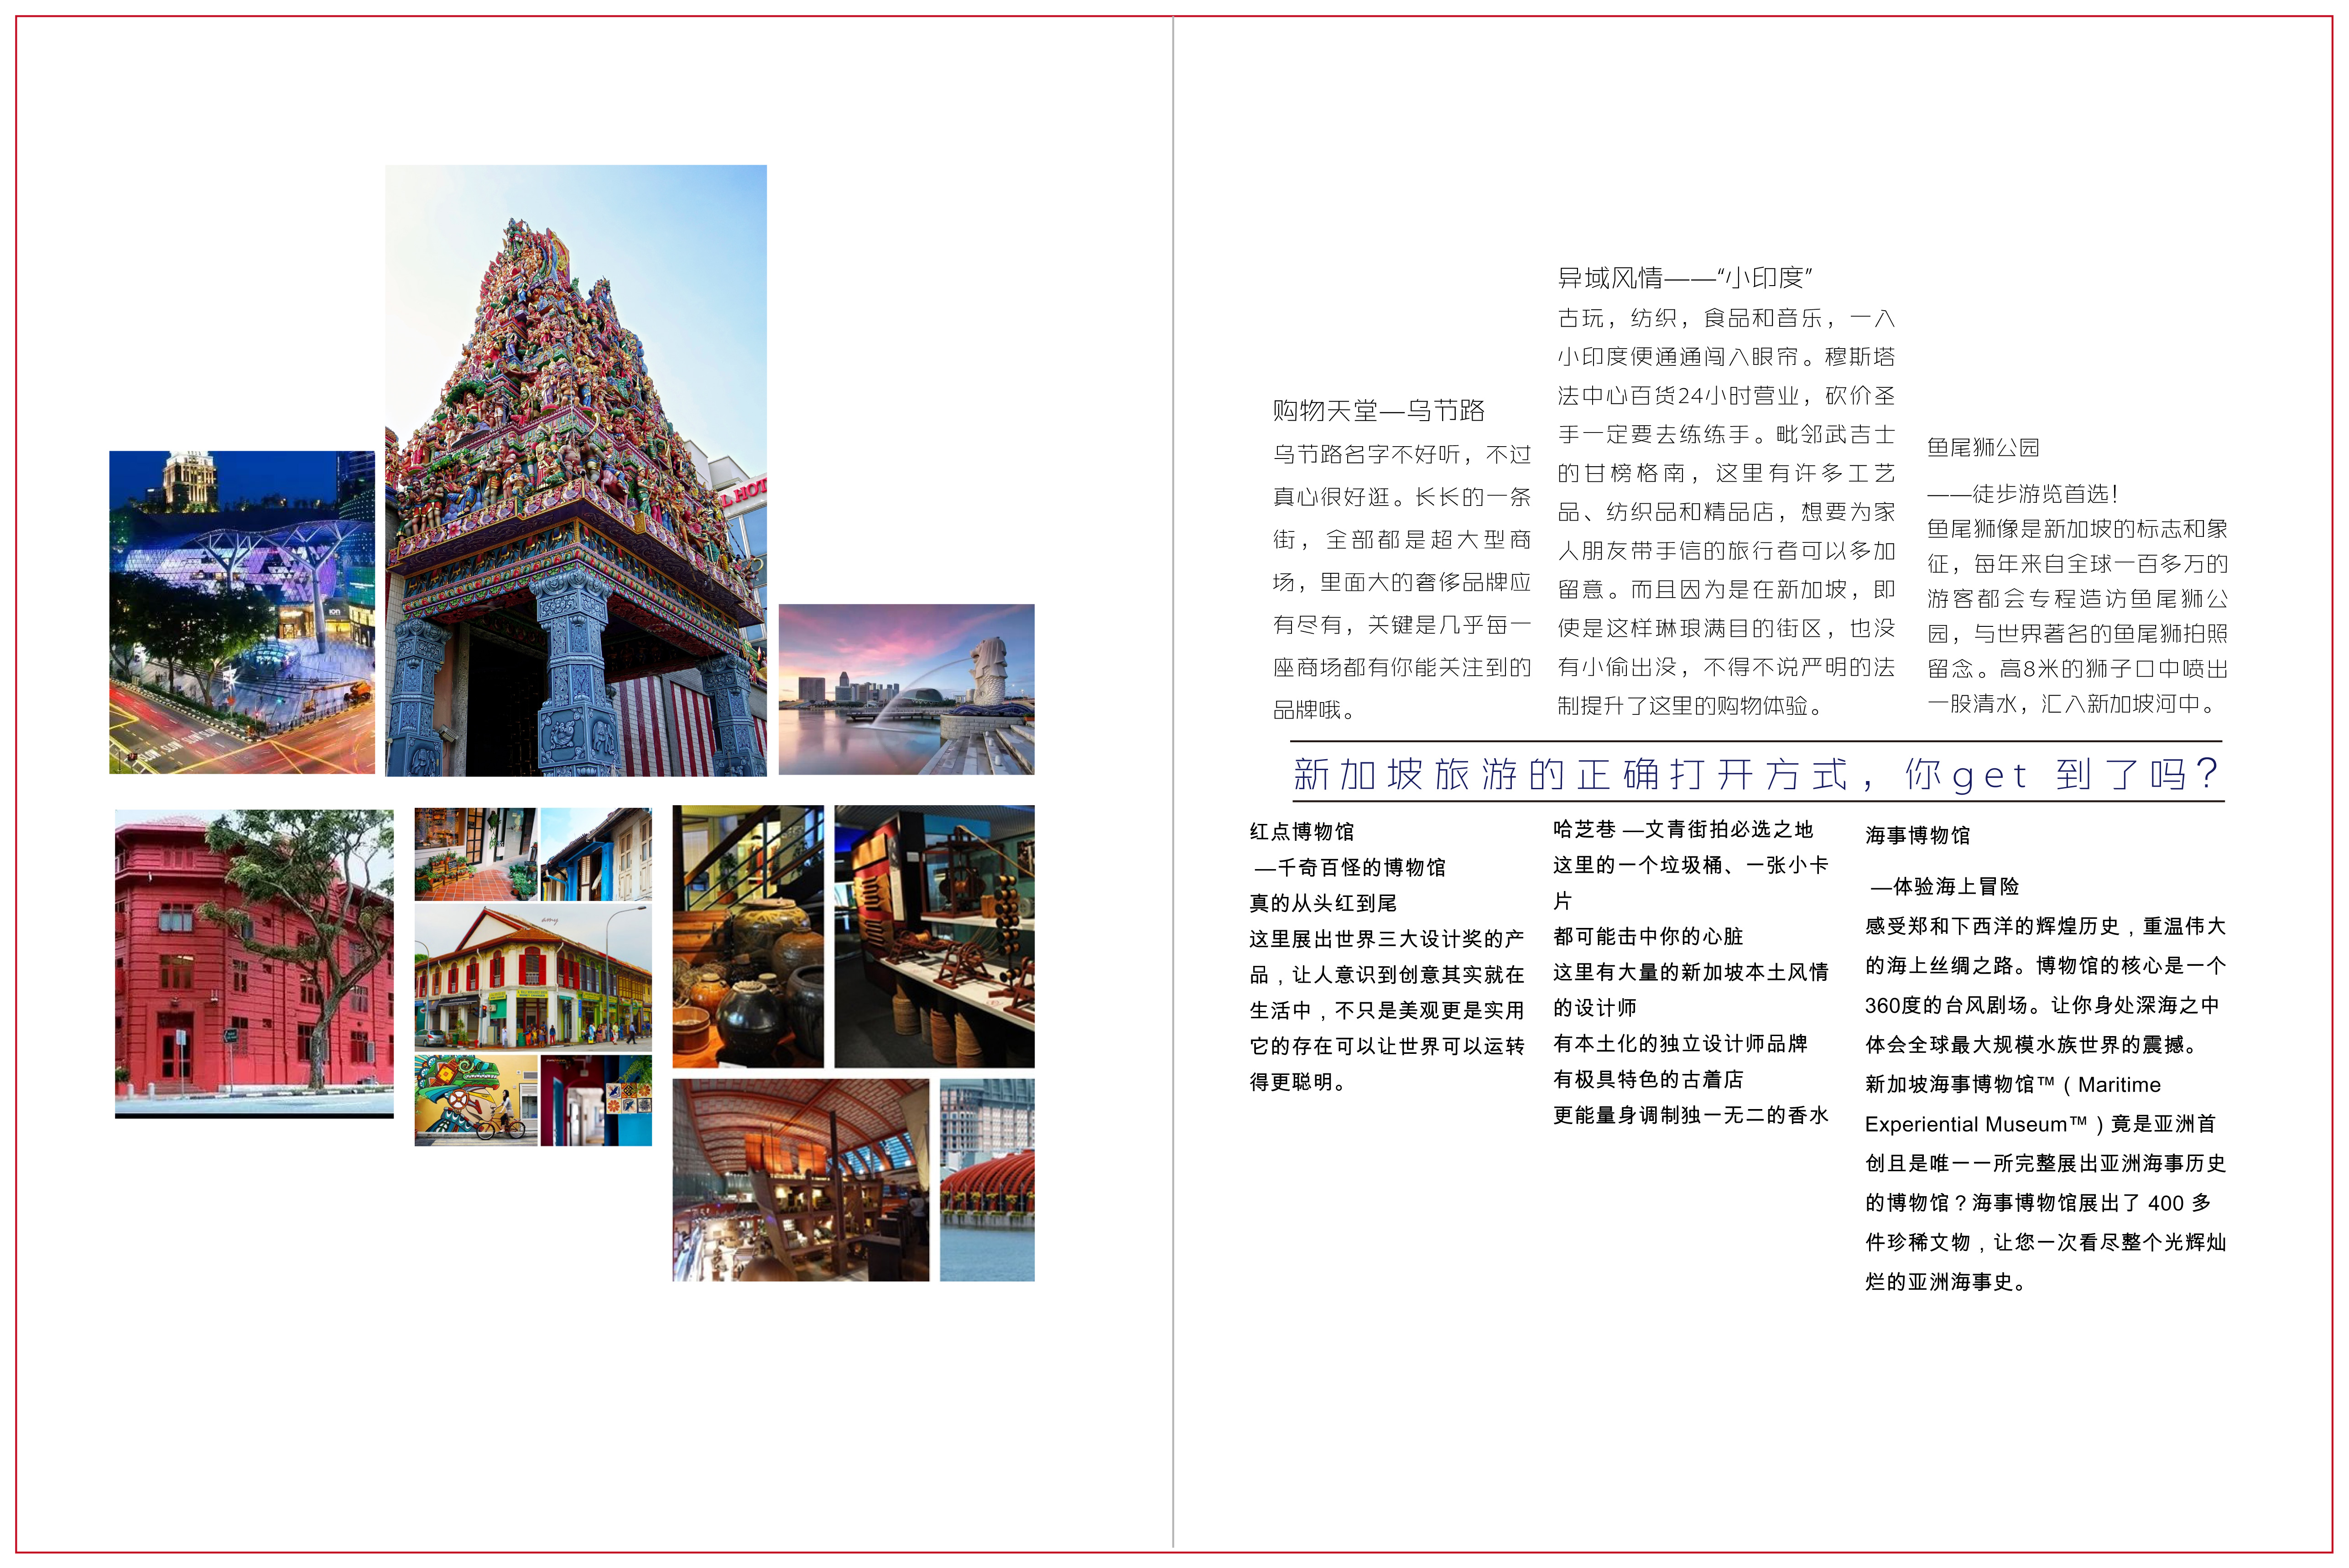 旅游杂志内页排版设计图片